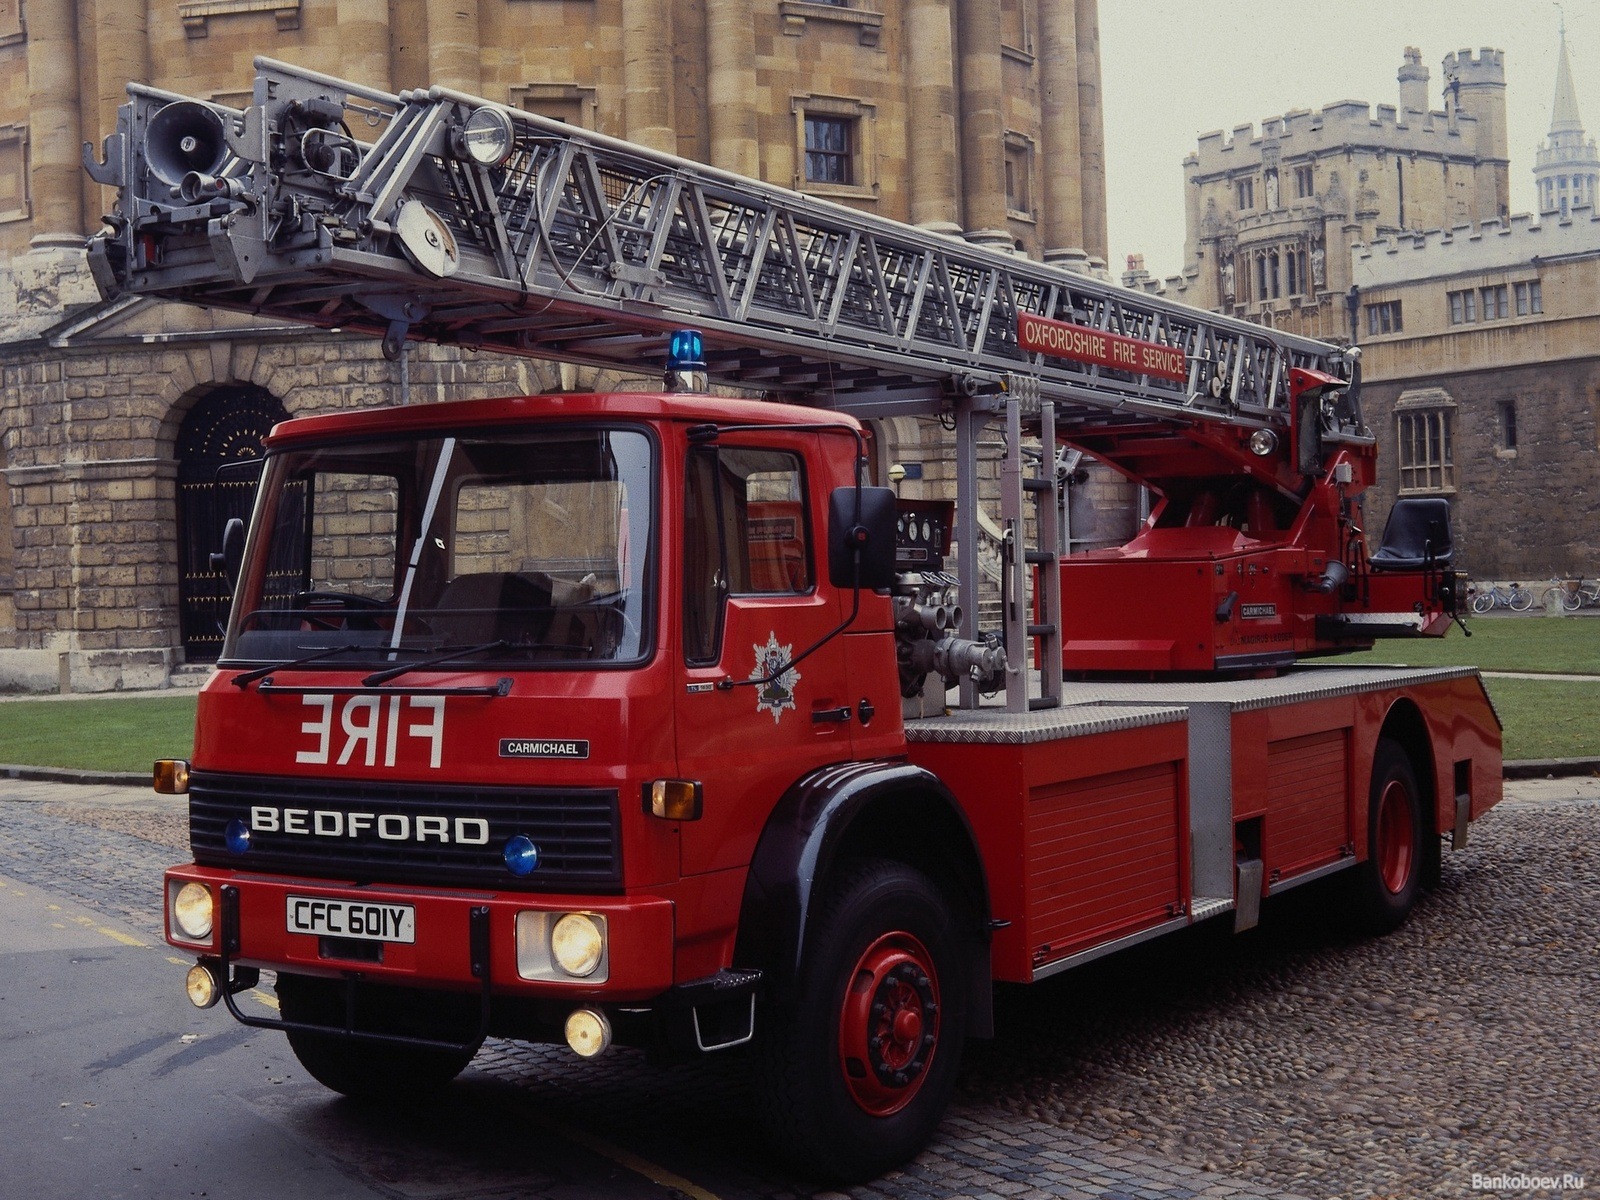 Fond d'écran HQ Bedford TL 1630 Camion de pompier 1980 à 2048 x 1536 sur la...